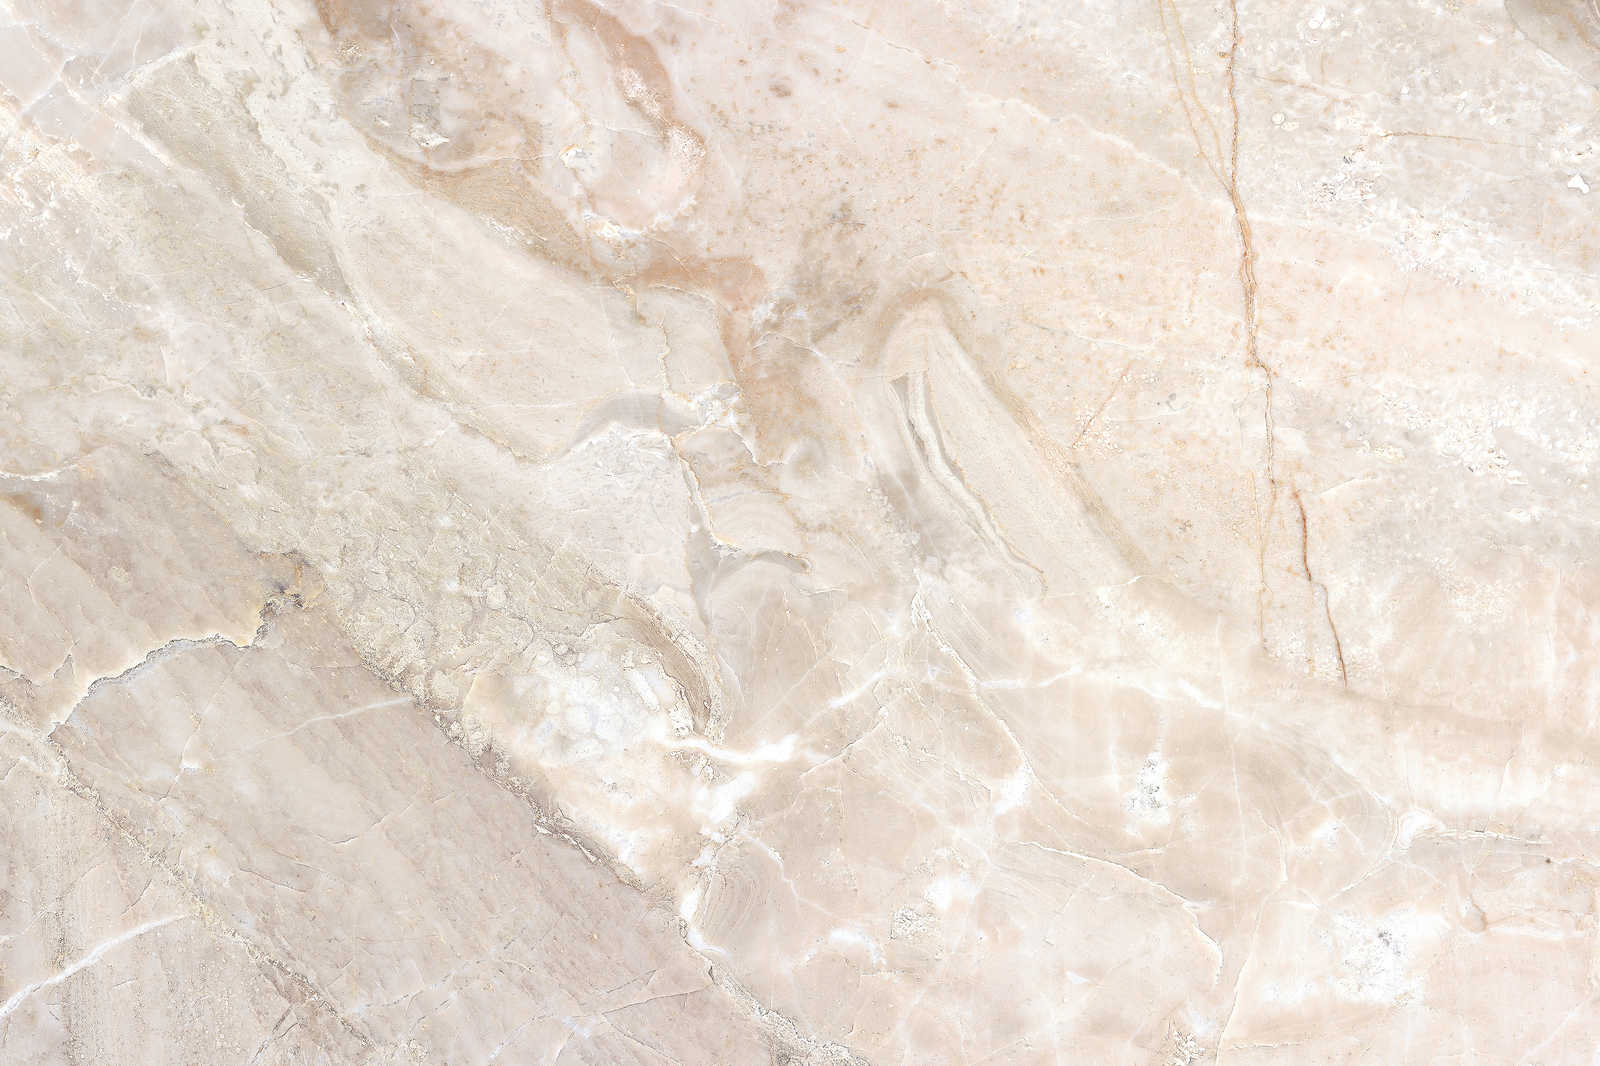             Quadro su tela con aspetto marmoreo Primo piano - 0,90 m x 0,60 m
        